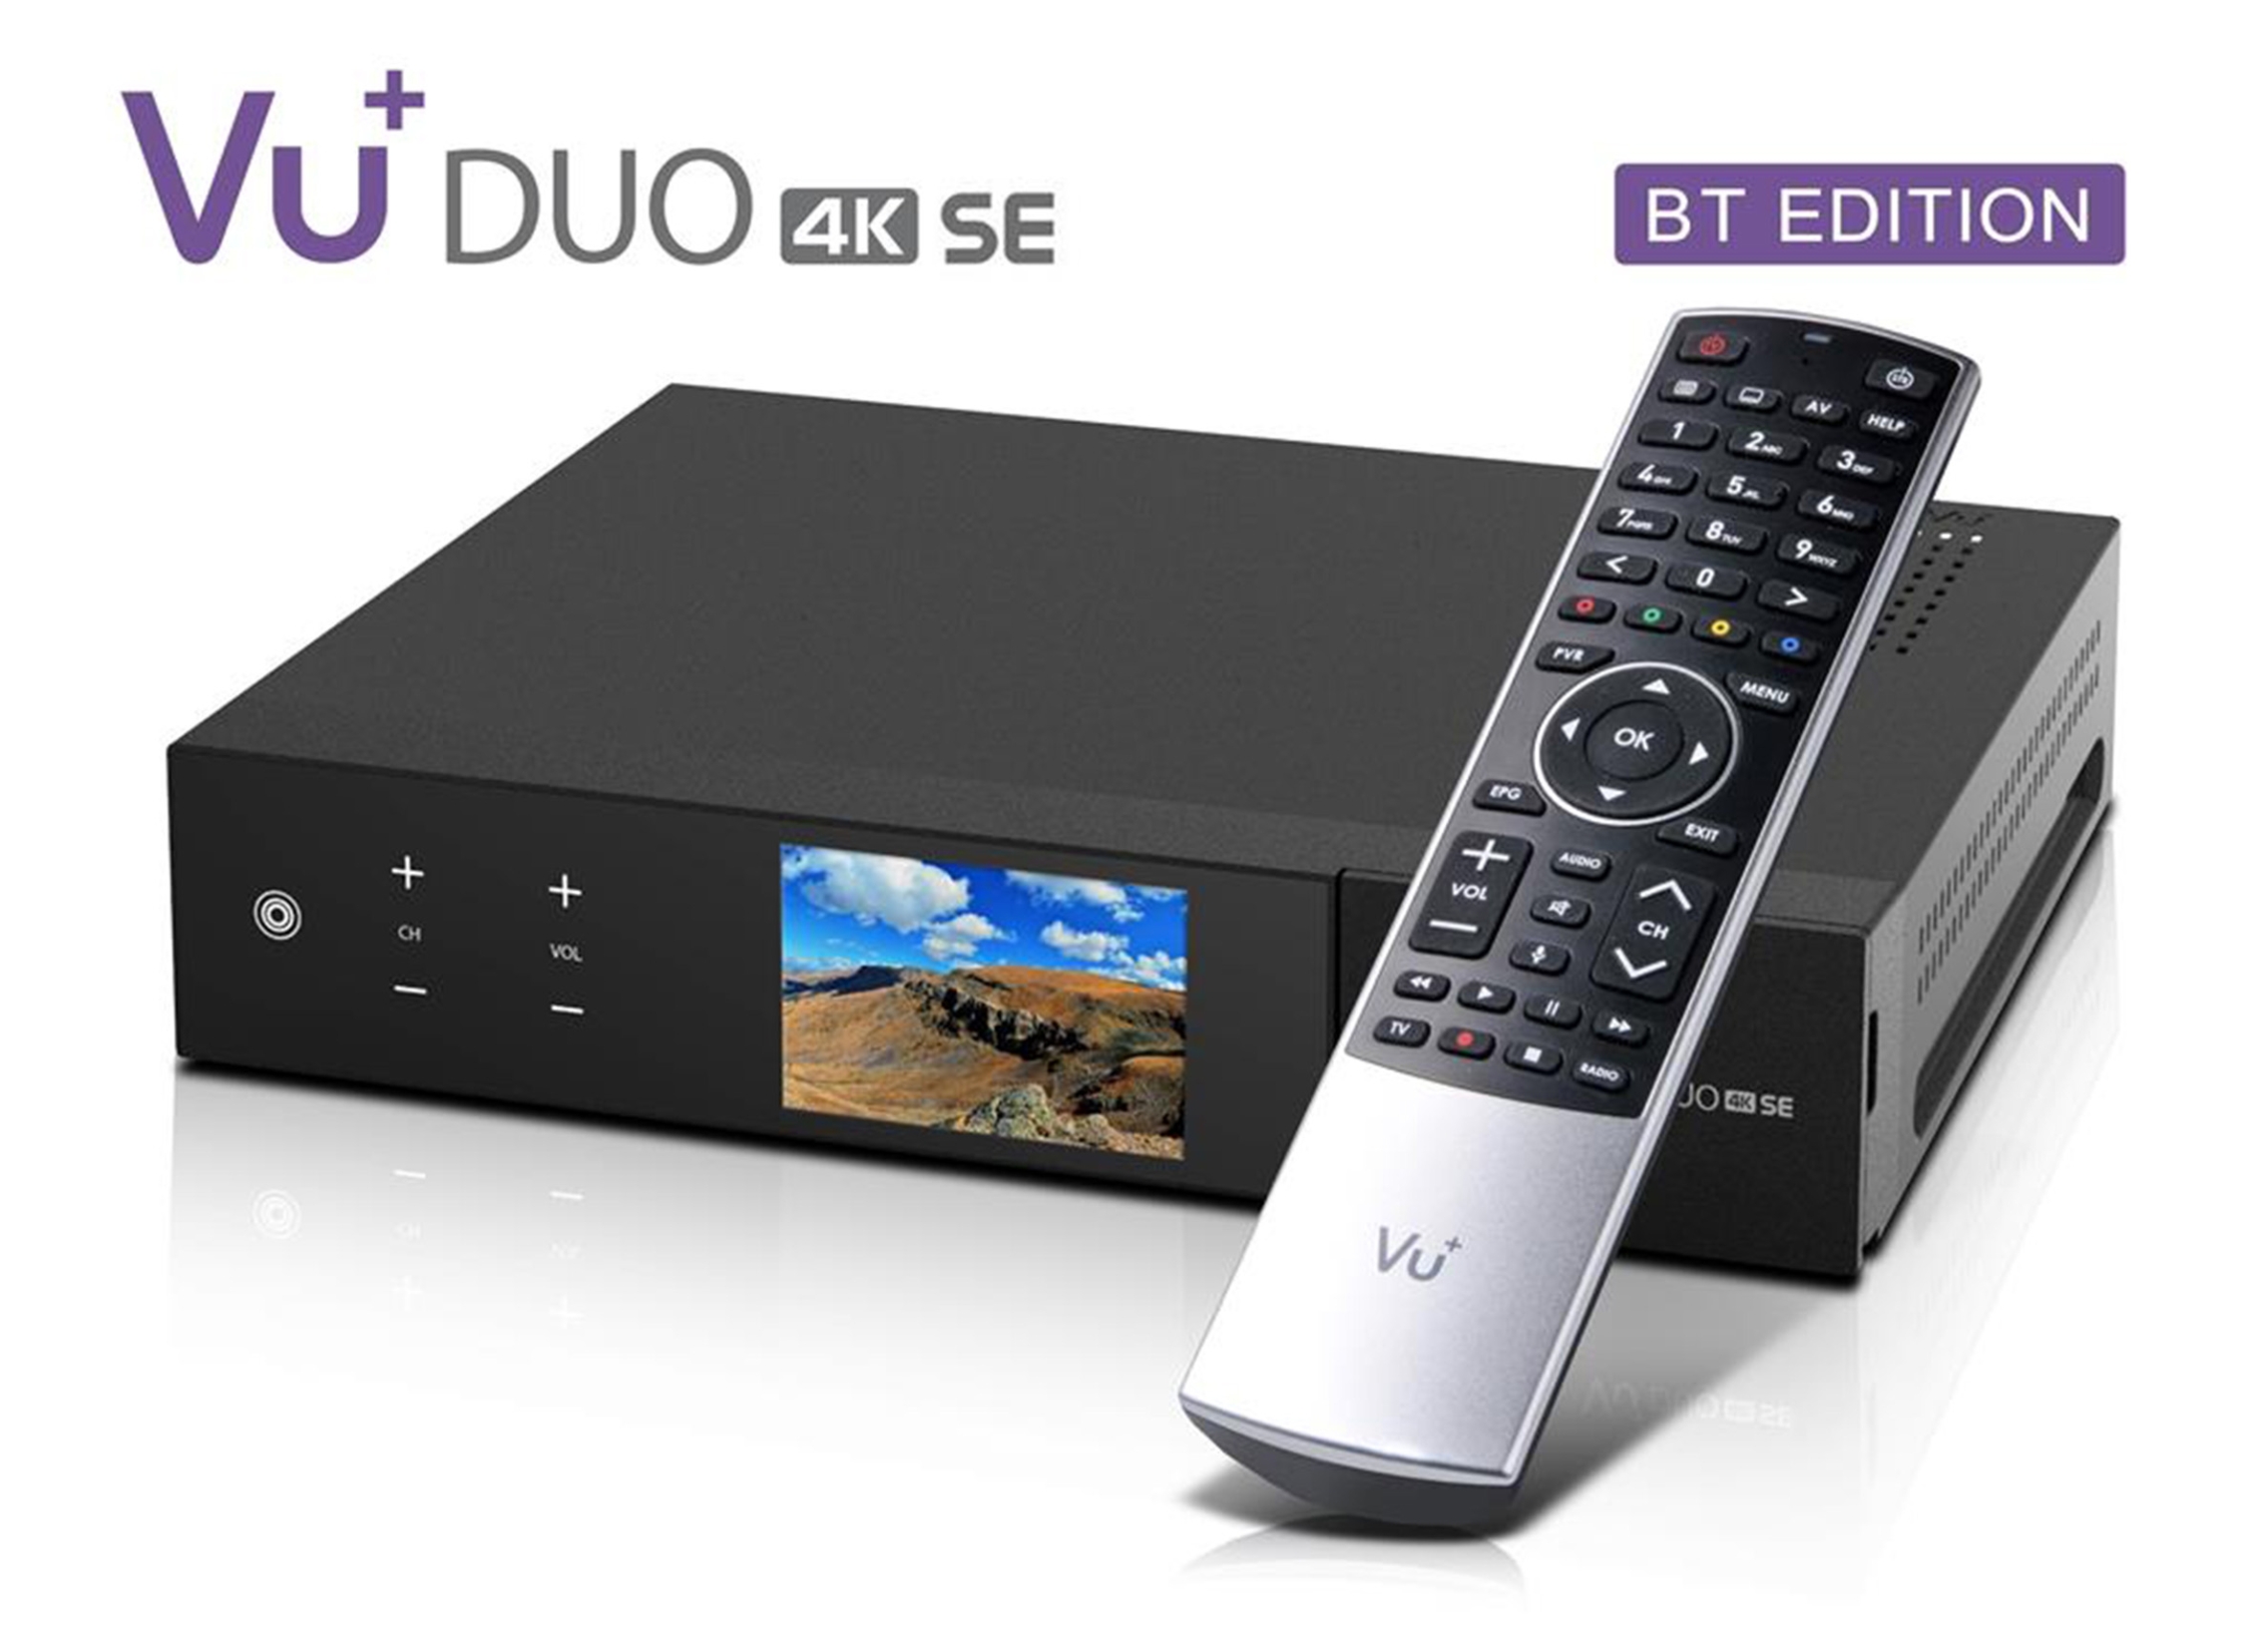 VU+ Duo 4K SE BT 1xDVB-C FBC/1x DVB-T2 DUAL Linux Receiver